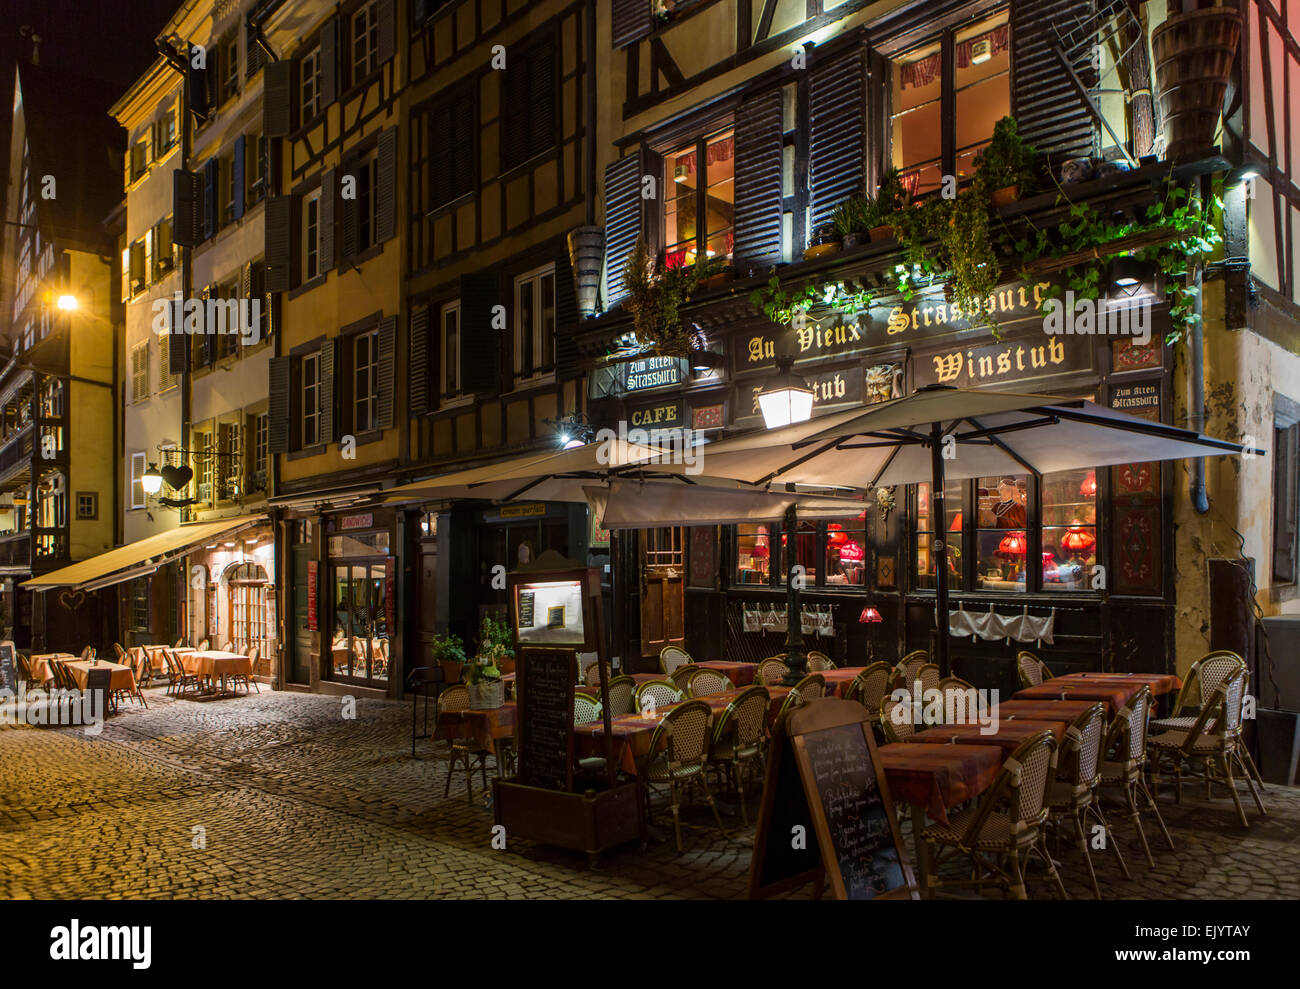 Restaurant Café de la rue des tables et des chaises dans la nuit, Strasbourg, France Banque D'Images